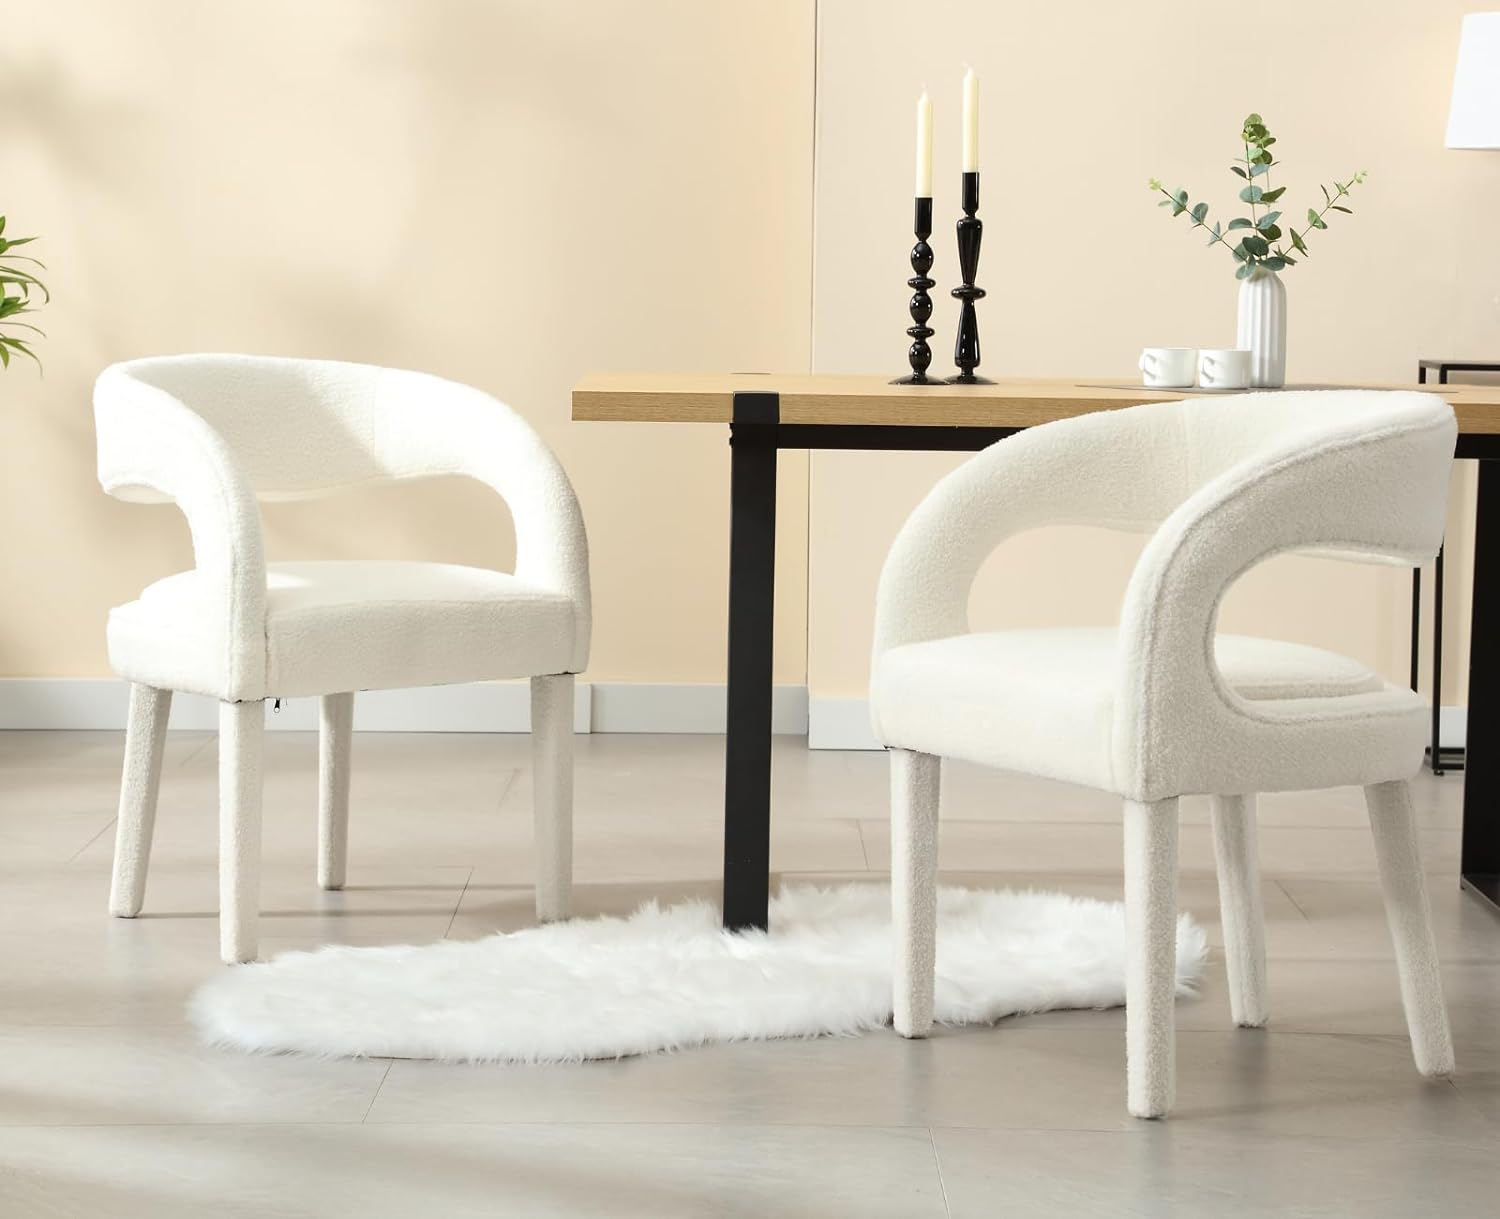 Juego de 2 sillas de comedor tapizadas blancas, modernas sillas de cocina y